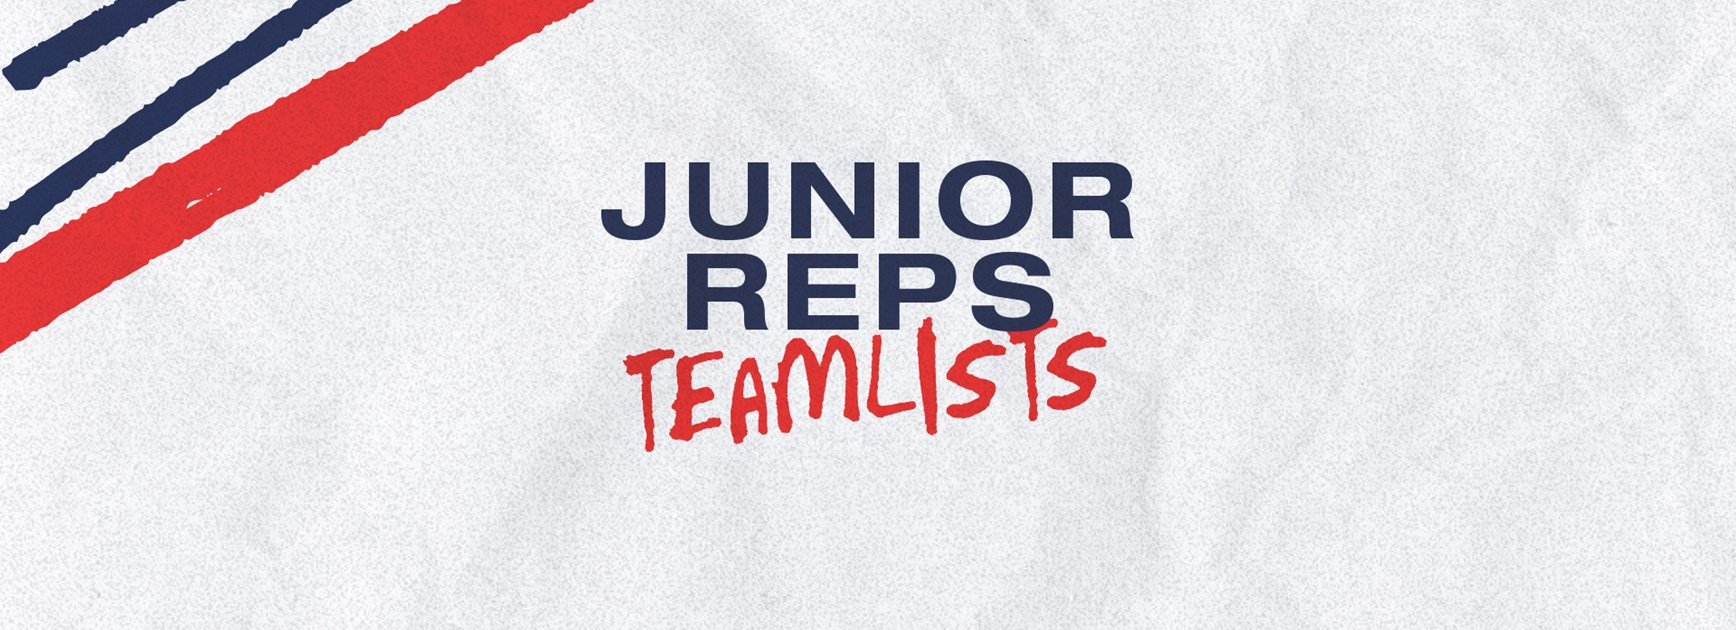 Junior Representative Teamlists for Round 6 Announced